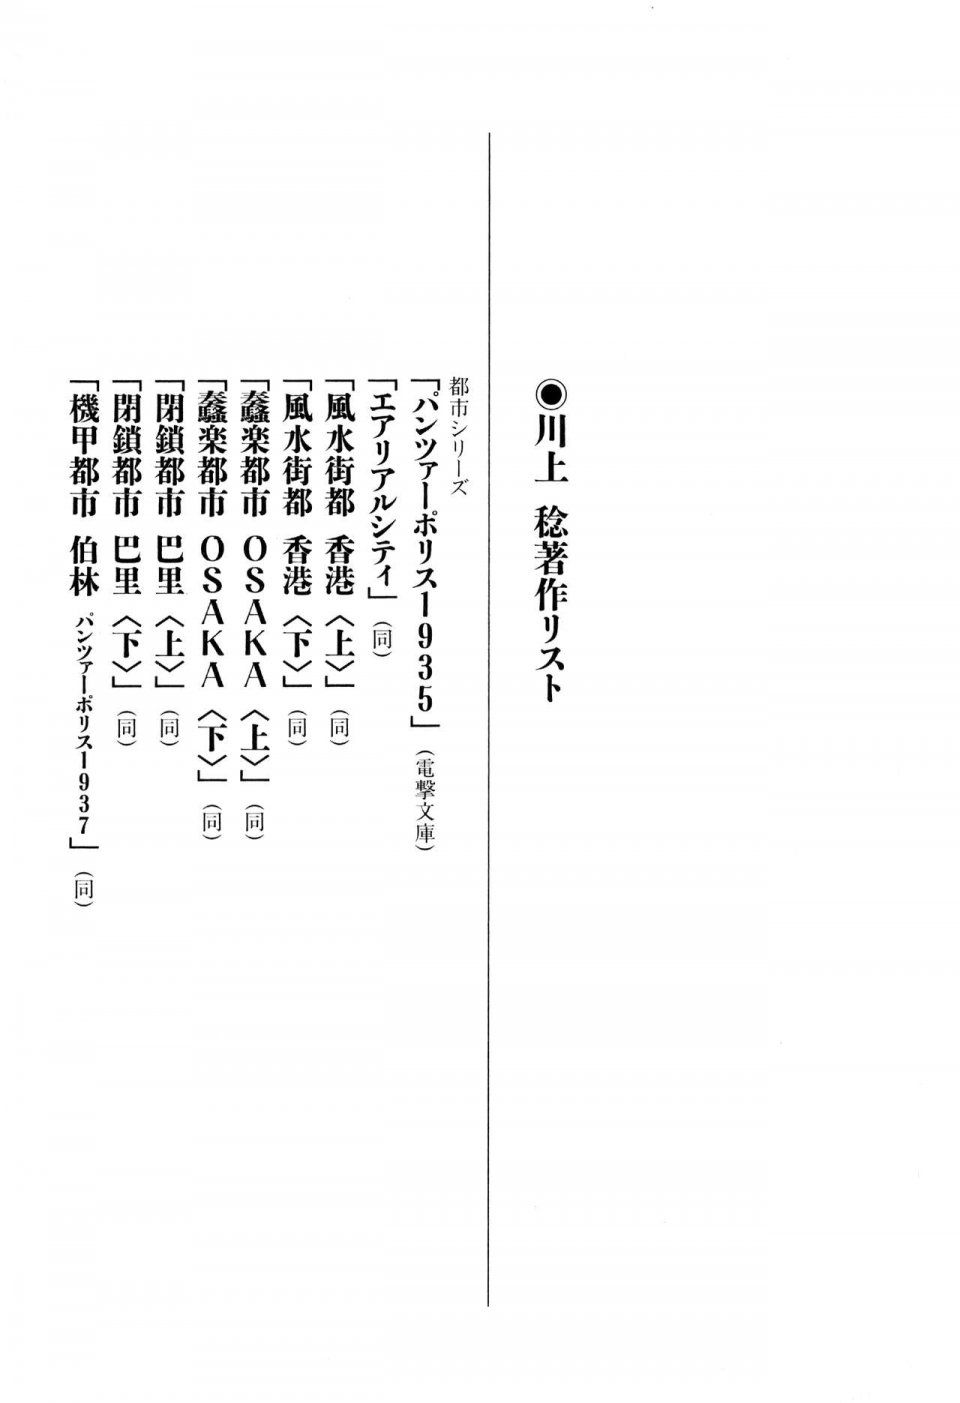 Kyoukai Senjou no Horizon LN Vol 11(5A) - Photo #706